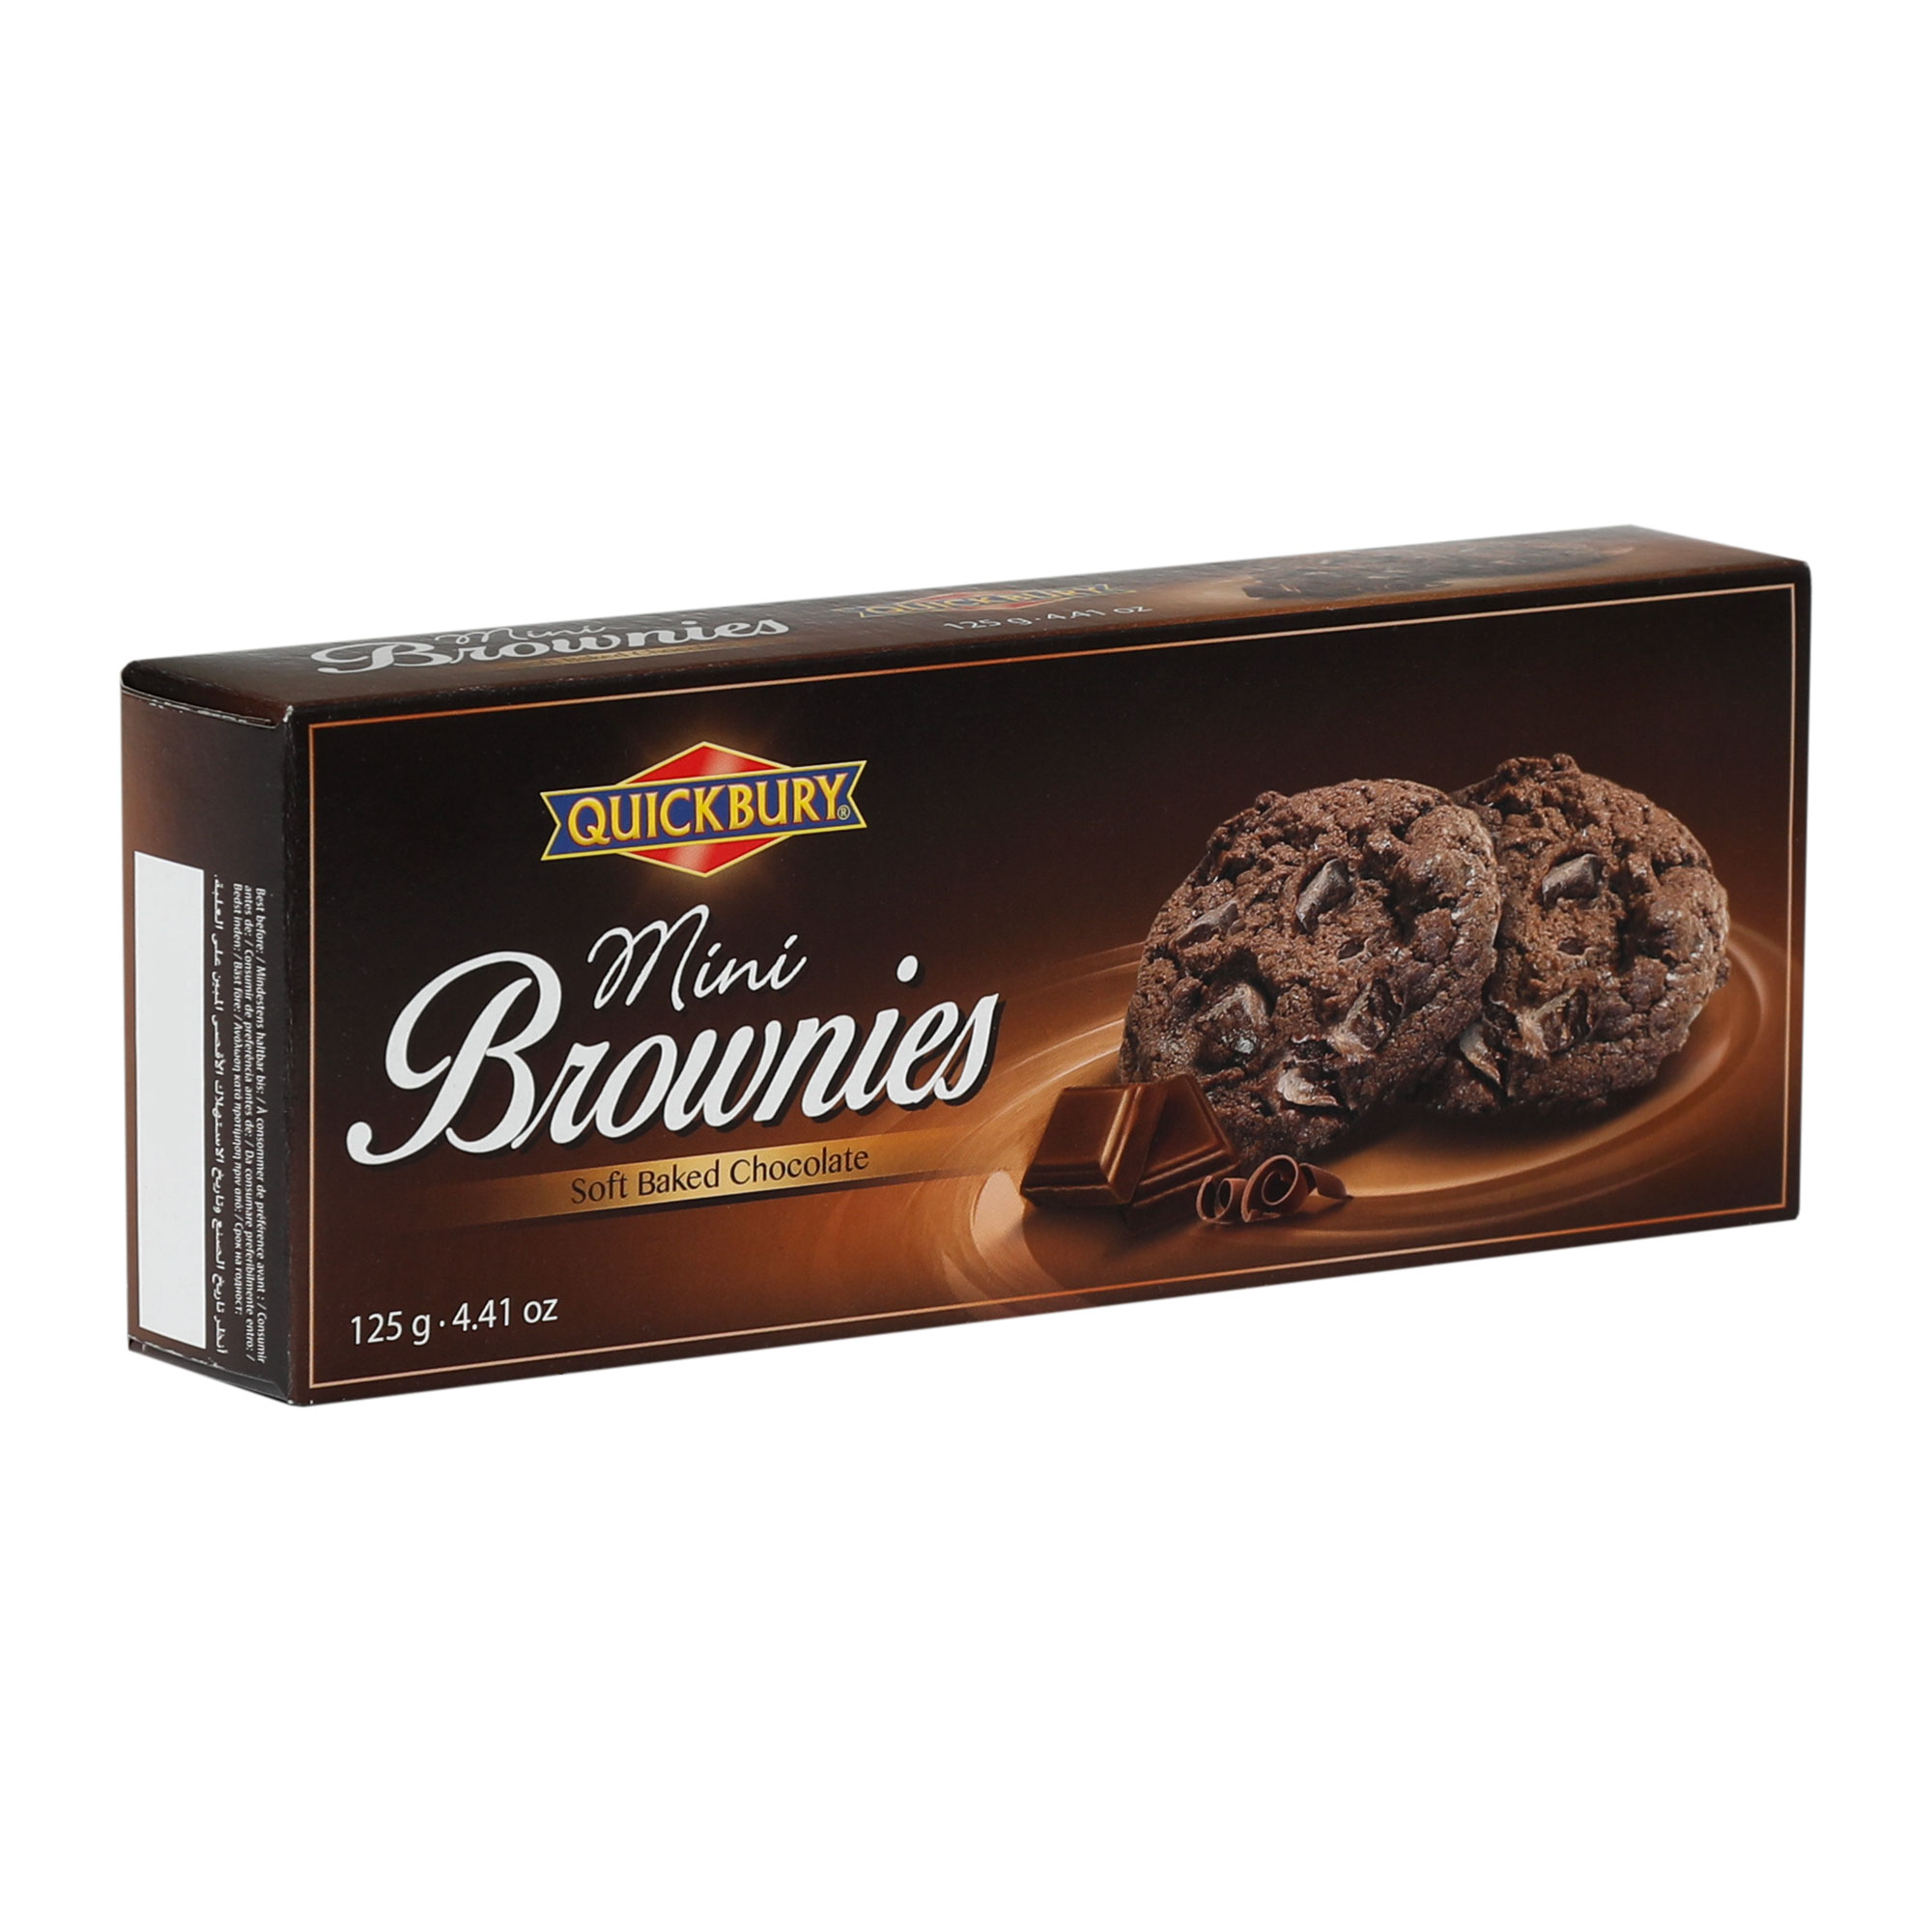 Печенье шоколадное Quickbury Mini Brownies 125 г масло киприно сливочное алтайское 82% бзмж 200 гр